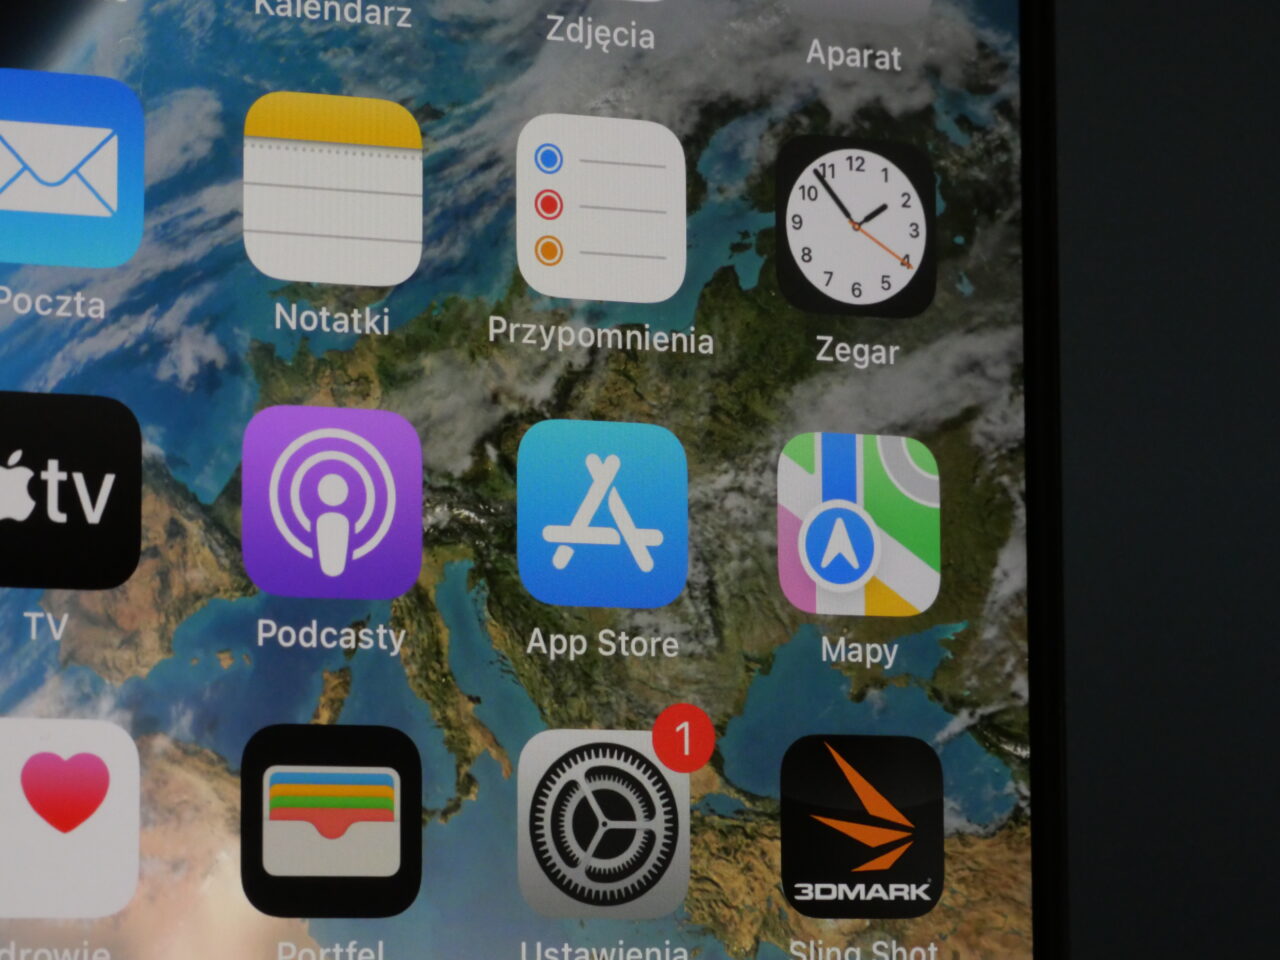 Zbliżenie na ekran urządzenia mobilnego z wyświetlonymi aplikacjami, takimi jak Kalendarz, Zdjęcia, Aparat, Notatki, Przypomnienia, Zegar, Podkasty, App Store, Mapy oraz inne.